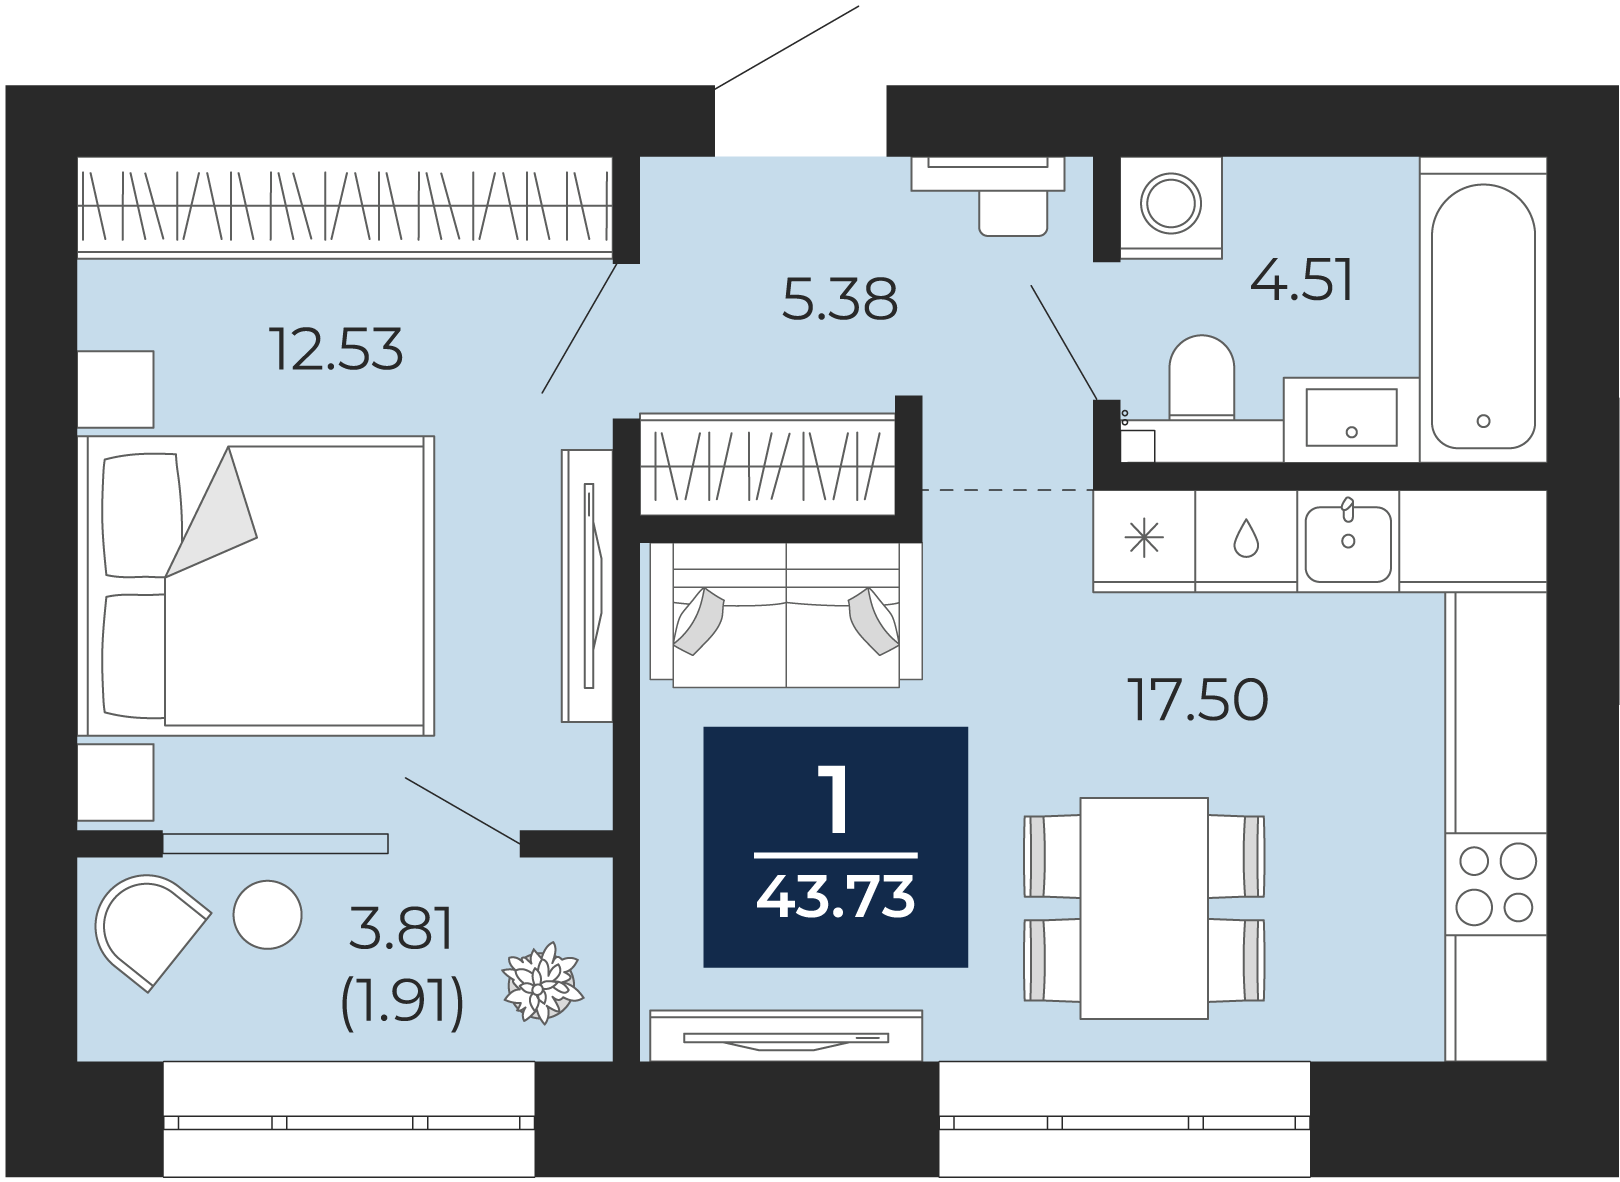 Квартира № 250, 1-комнатная, 43.73 кв. м, 10 этаж